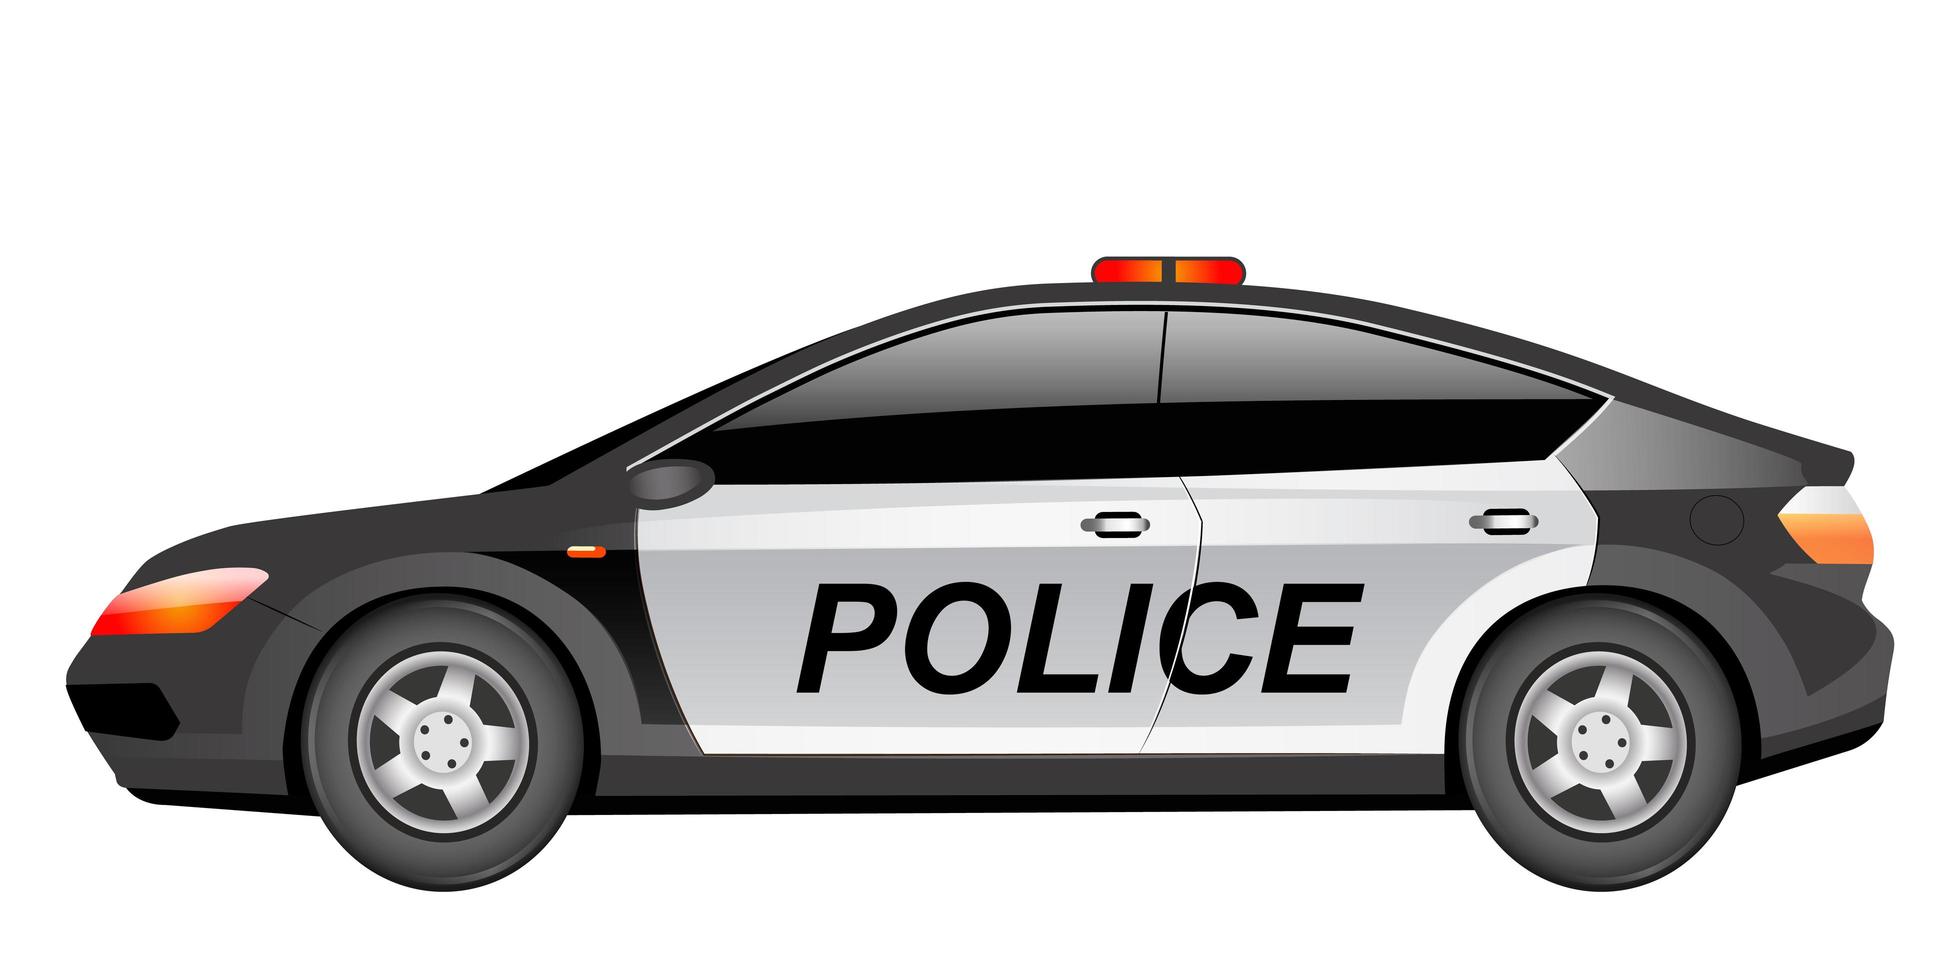 Police patrol car cartoon vector illustration